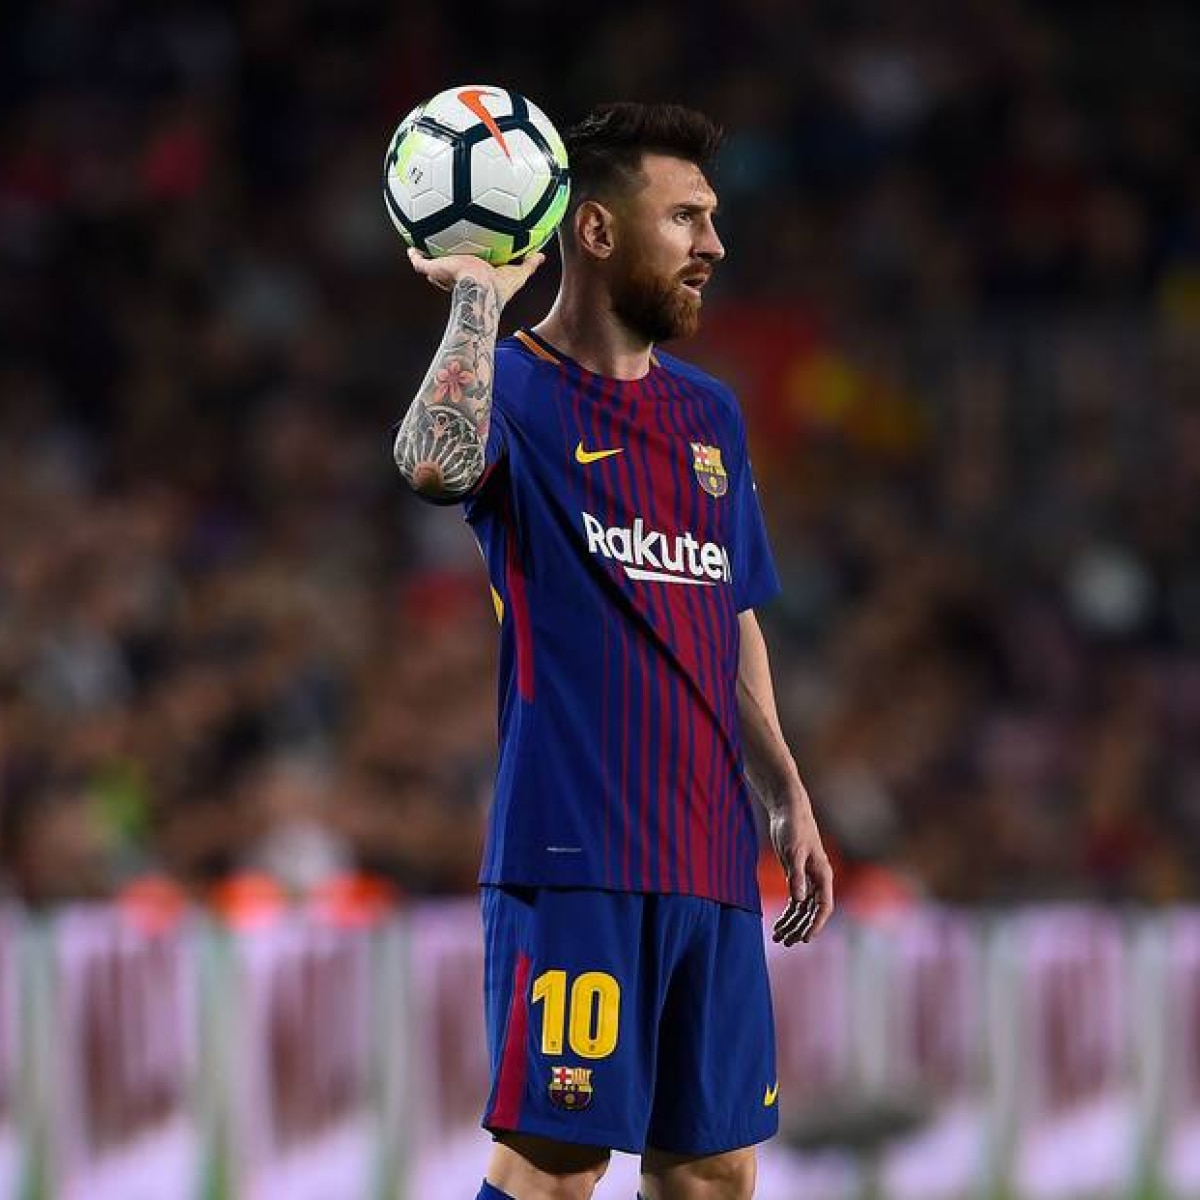 EUA: Messi dá lucro até para adversários; clube rival usará fama do craque  para se promover - Folha PE